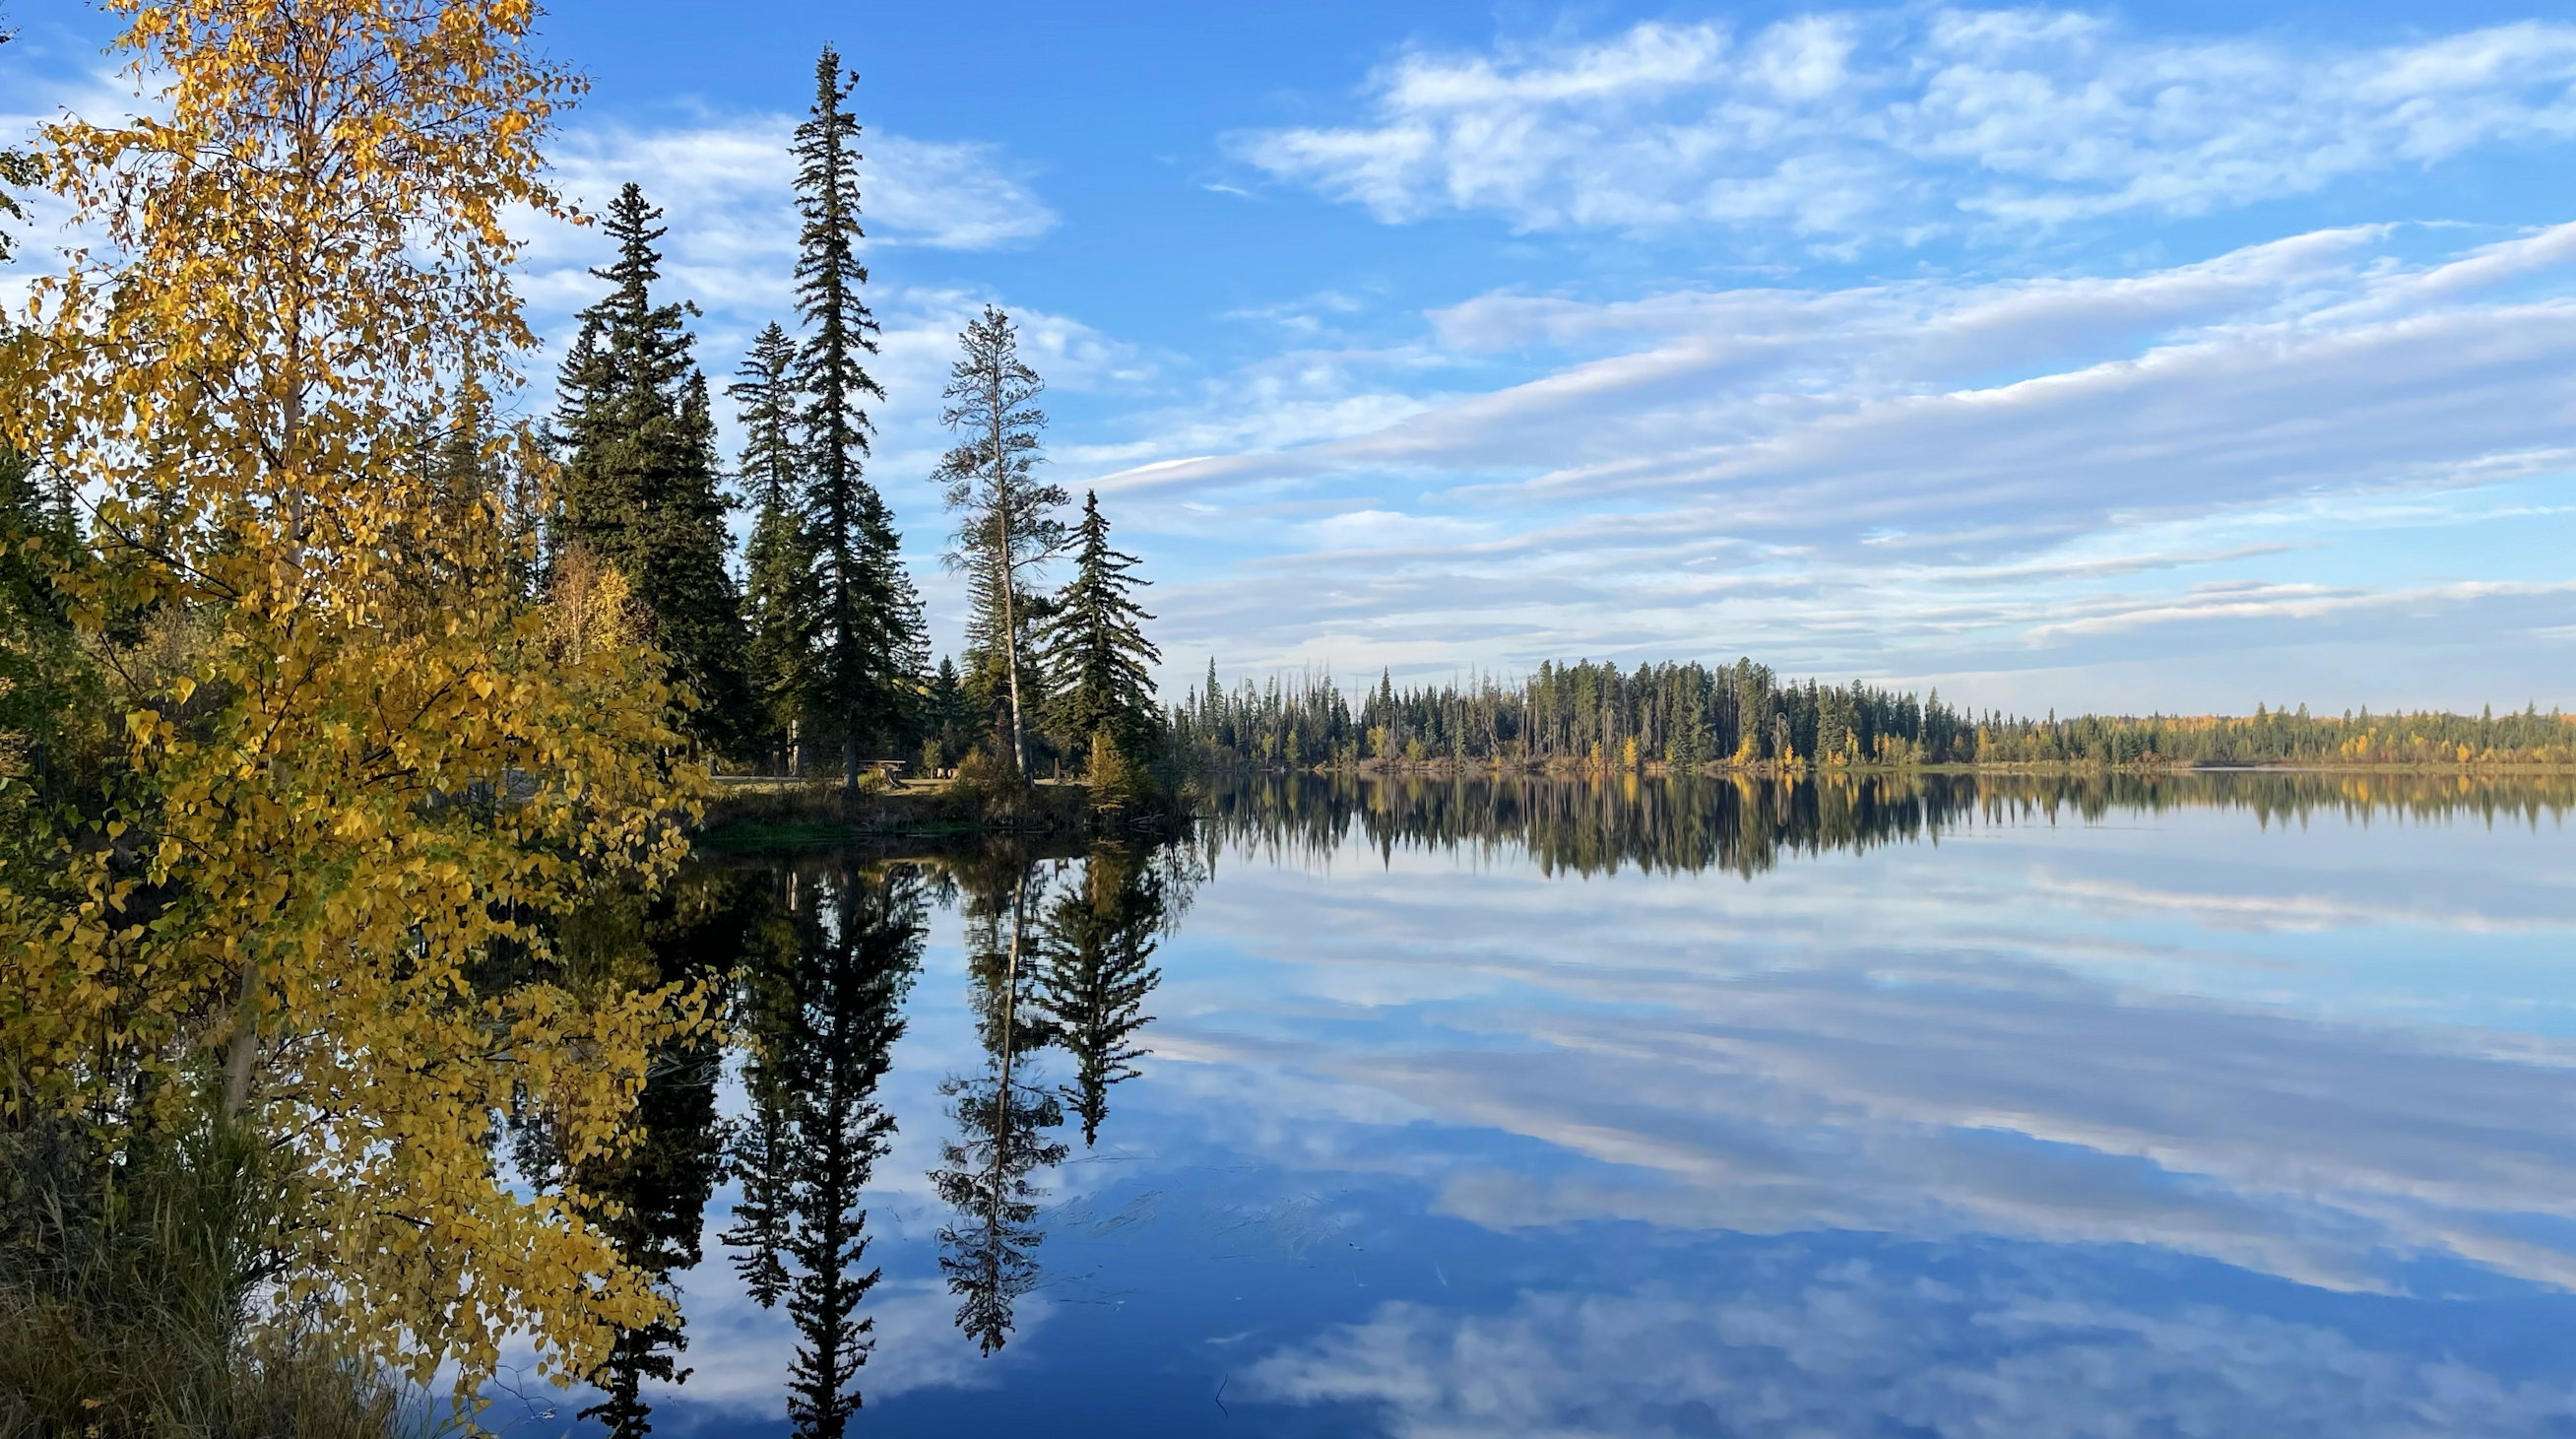 Morgens am Ole's Lake, spiegelglatte Oberfläche mit Bäumen unter blauem Himmel mit ein paar Schleierwolken